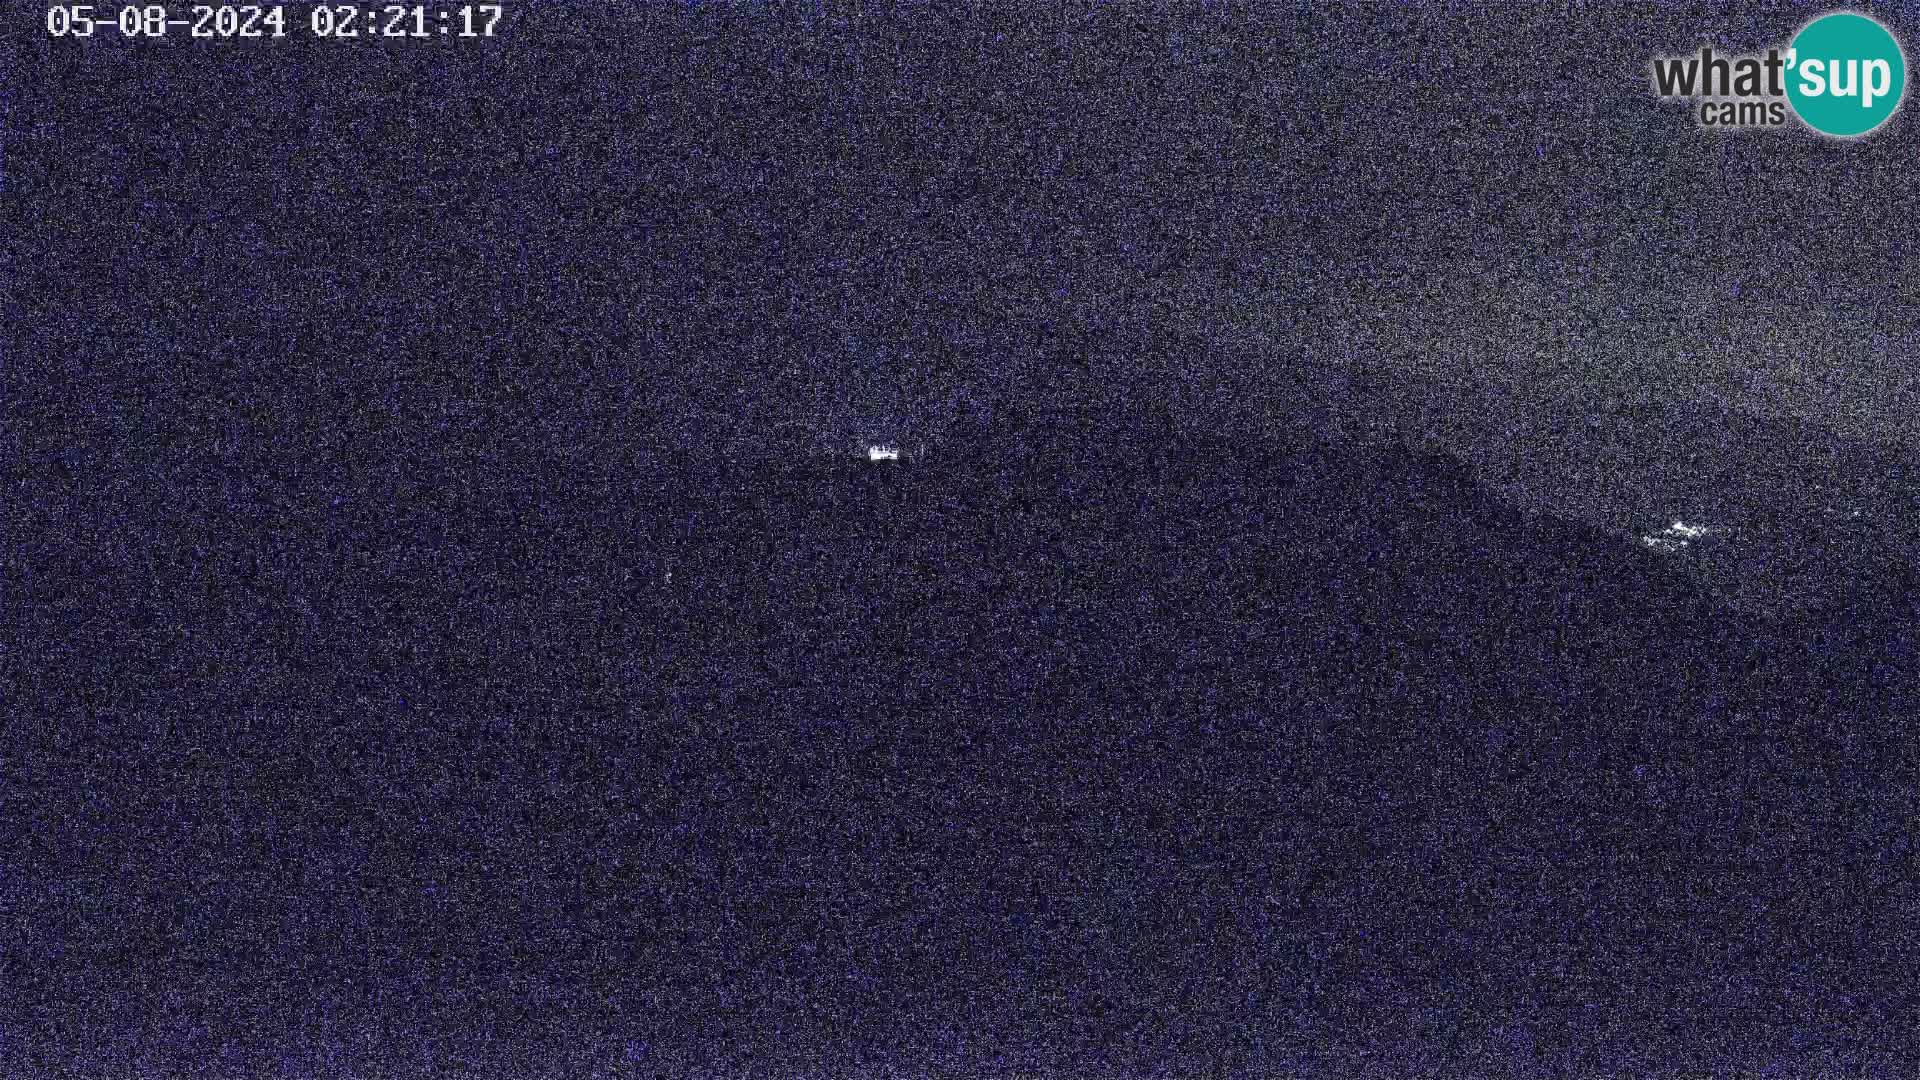 Stazione sciistica Vogel webcam Panorama dalla Orlova glave verso il Triglav